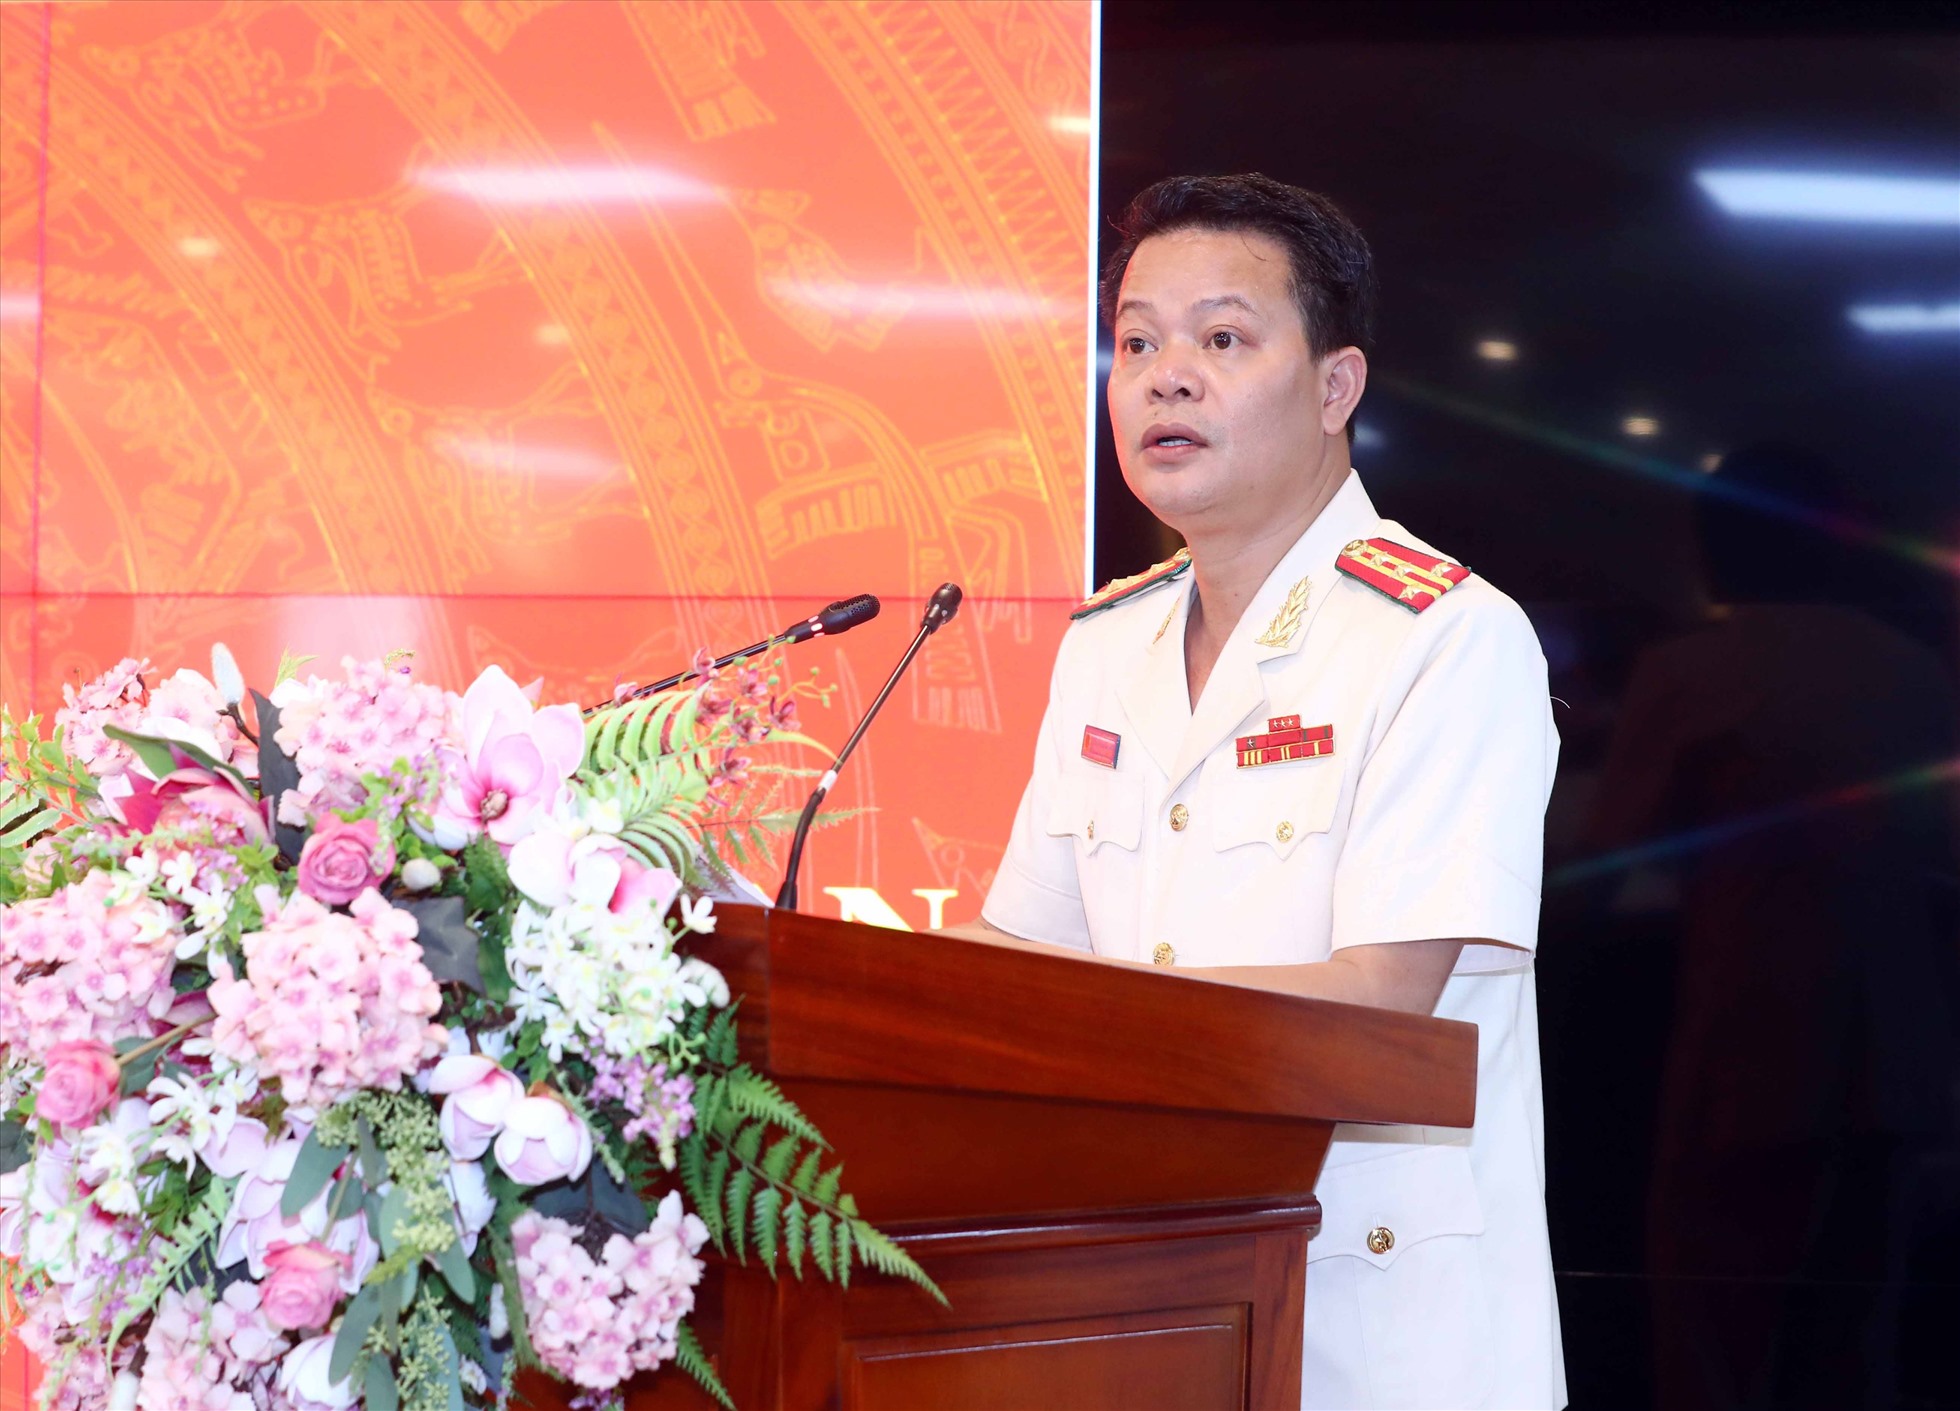 Tân Phó Cục trưởng C06 - Đại tá Vũ Văn Tấn phát biểu khi được bổ nhiệm. Ảnh: Đ.K